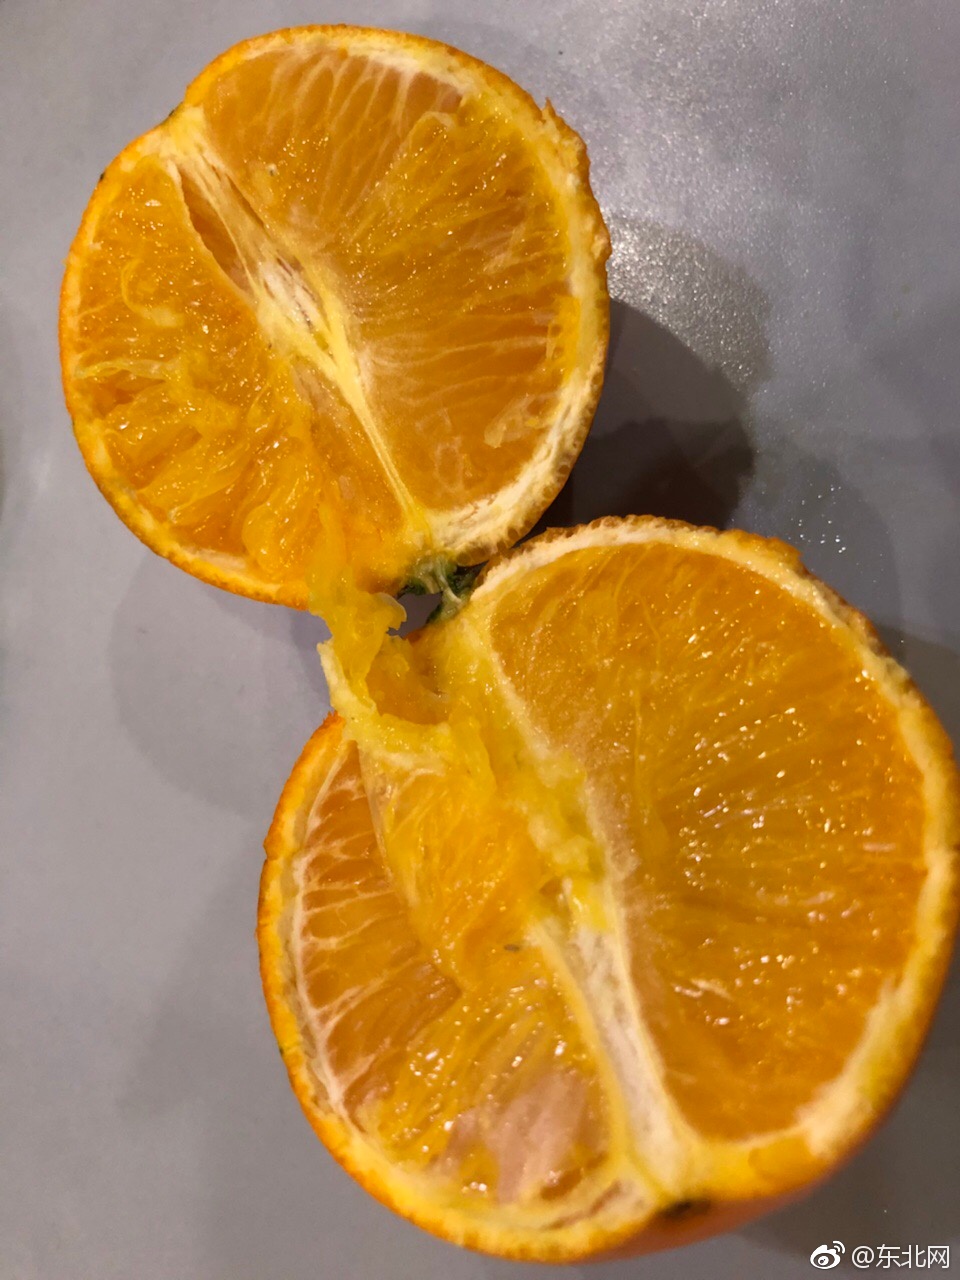 哈尔滨比优特超市!请解释一下这是血橙吗?